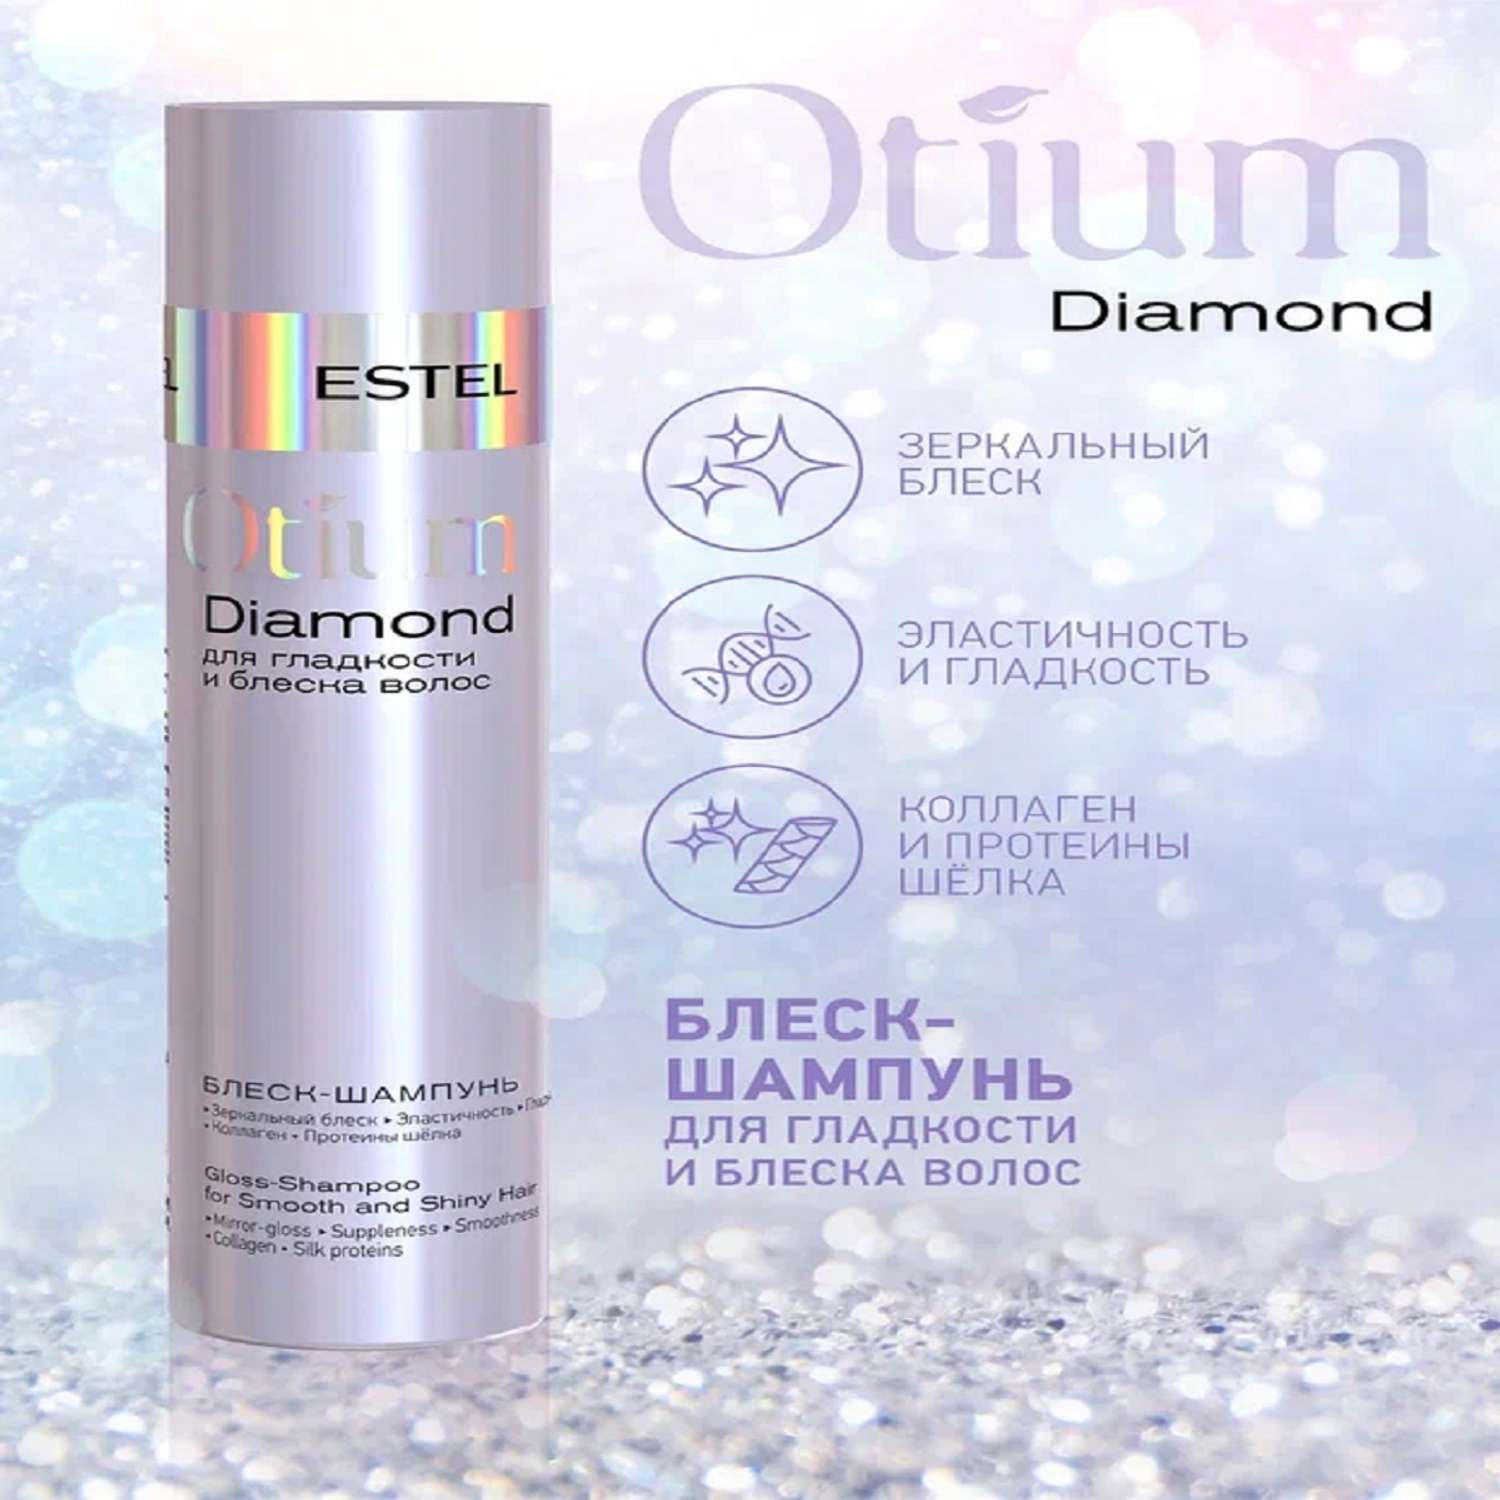 Косметический набор Estel Professional OTIUM DIAMOND для гладкости и блеска волос 250+200 мл - фото 2